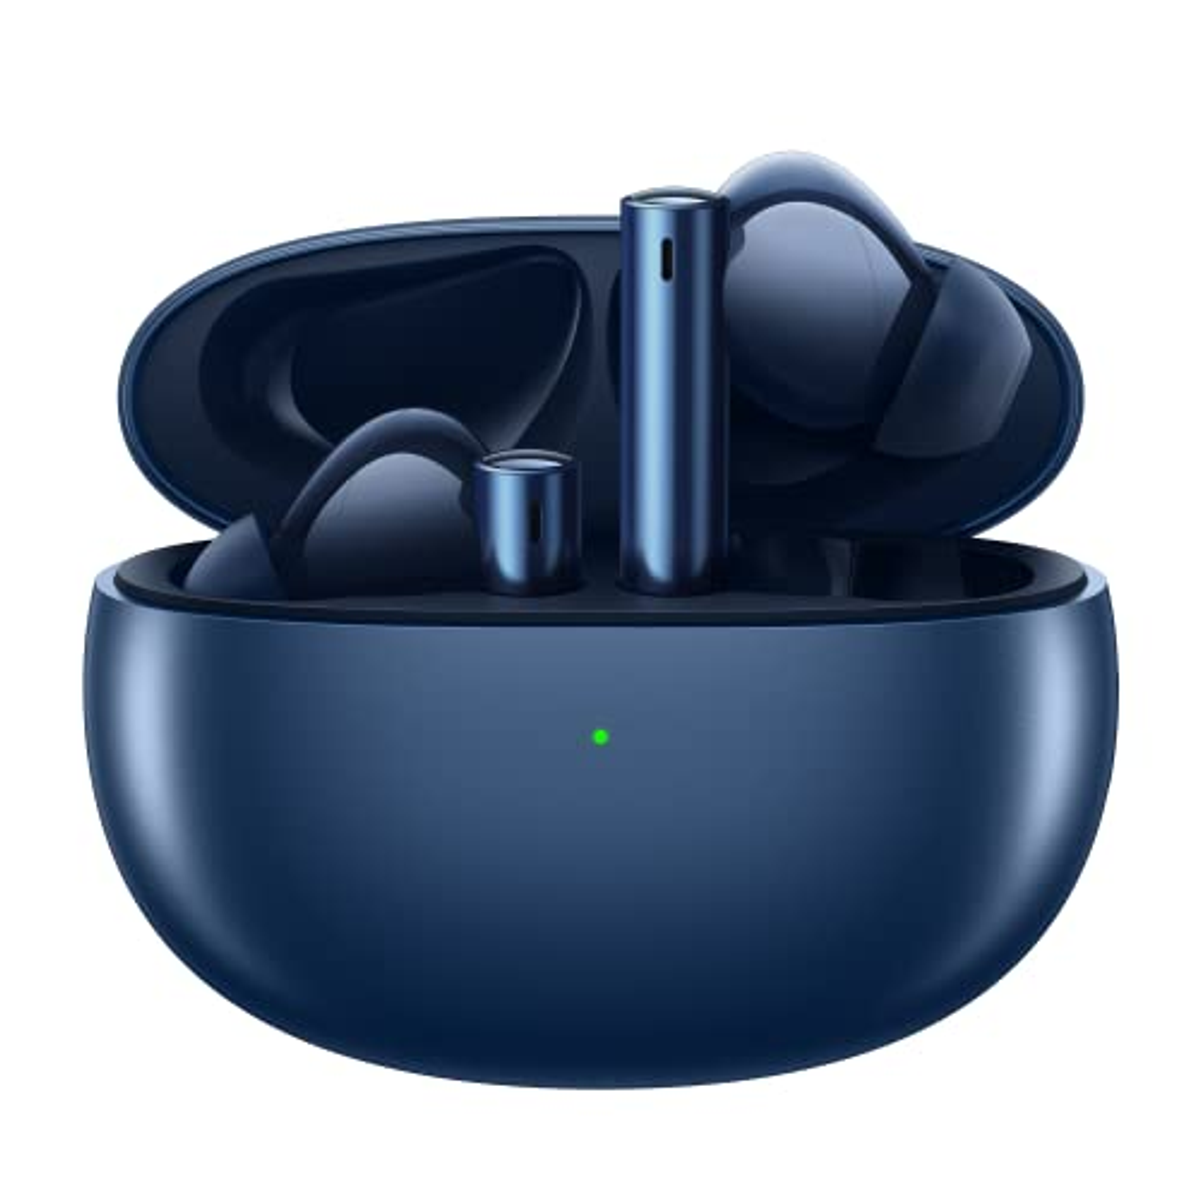 Blau Air REALME Bluetooth Buds 3, Kopfhörer Bluetooth In-ear